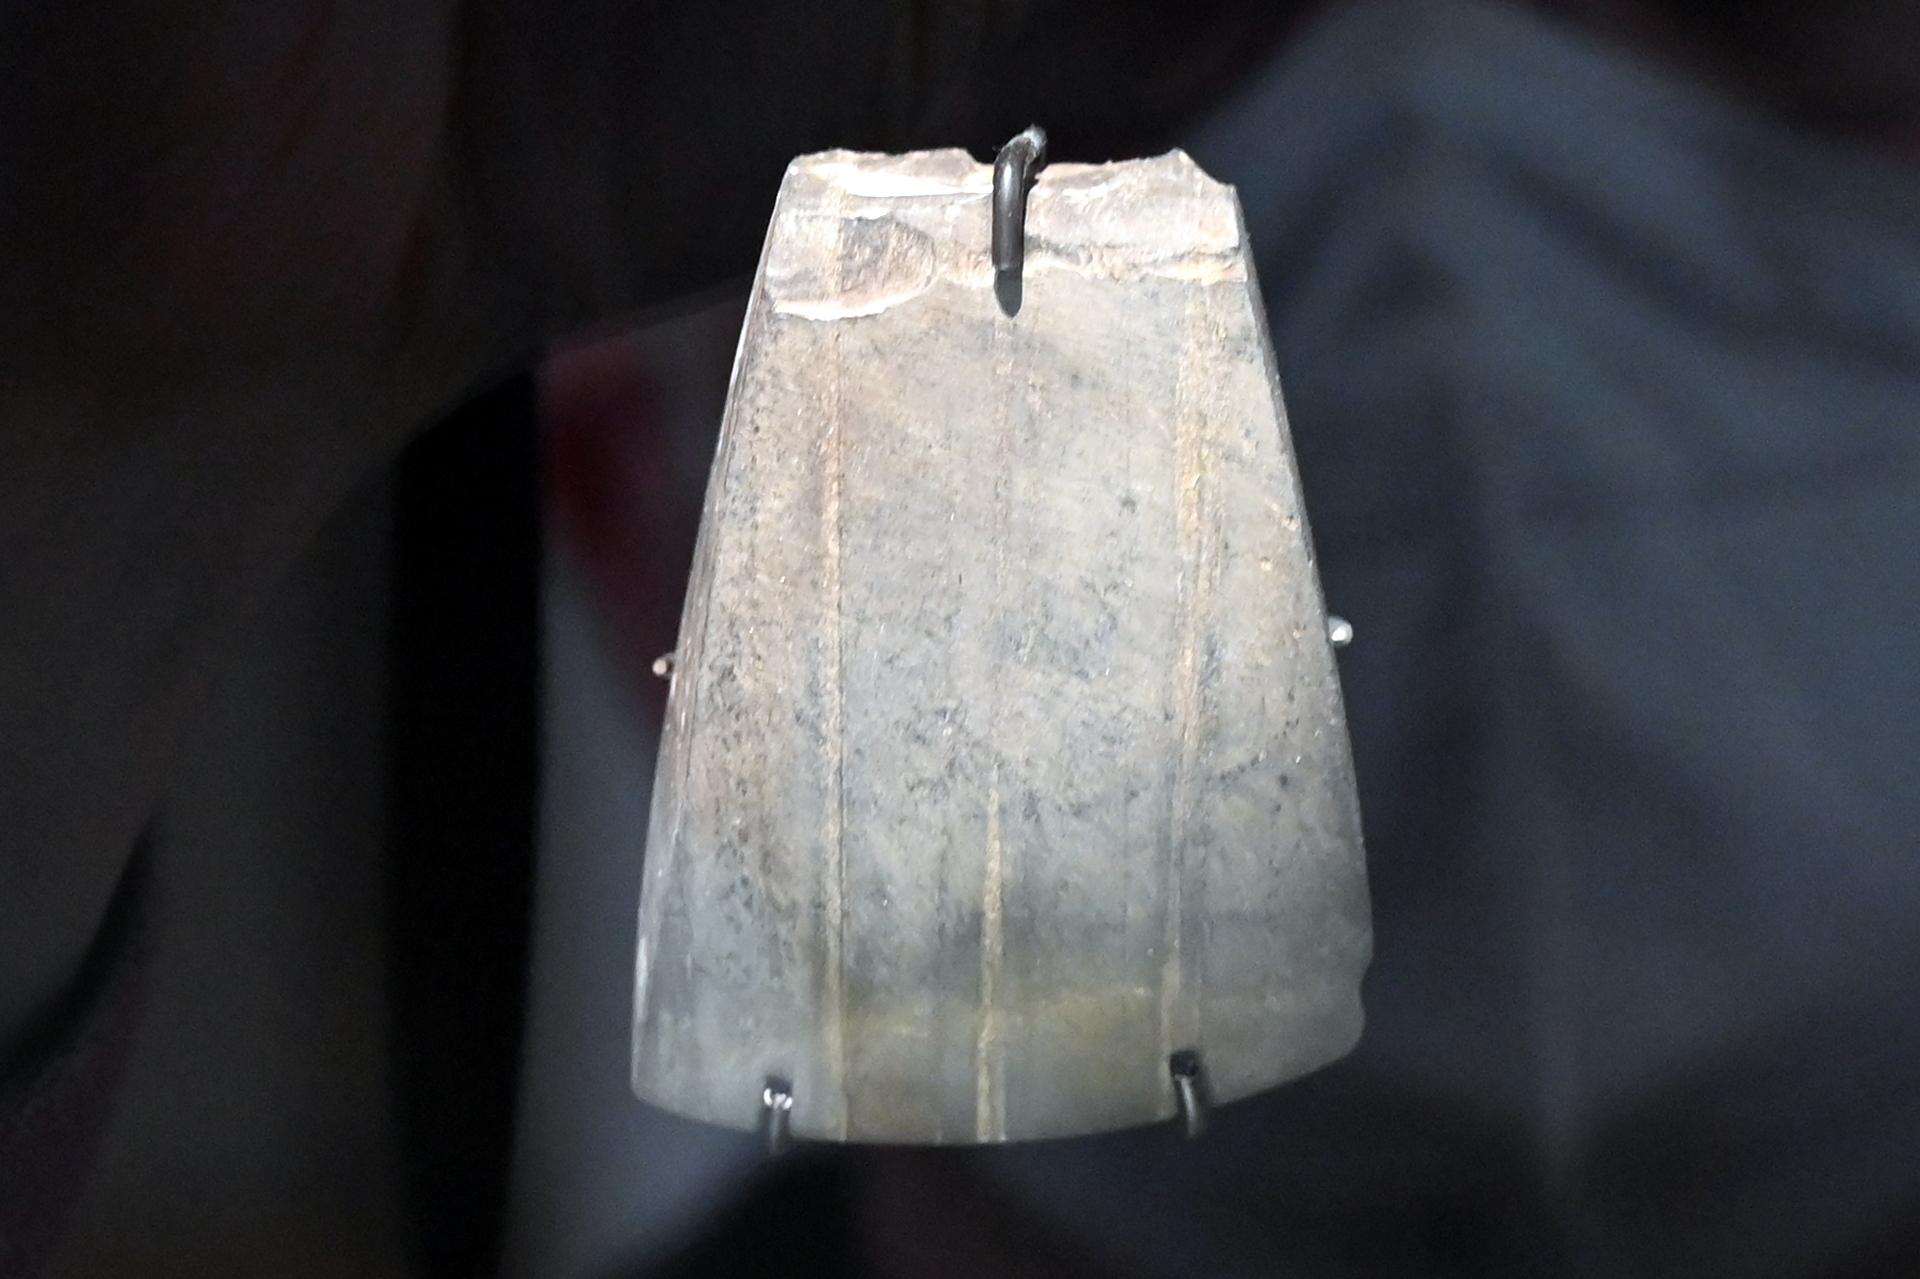 Breite Dechselklinge, Neolithikum (Jungsteinzeit), 5500 - 1700 v. Chr., 3800 - 2800 v. Chr.